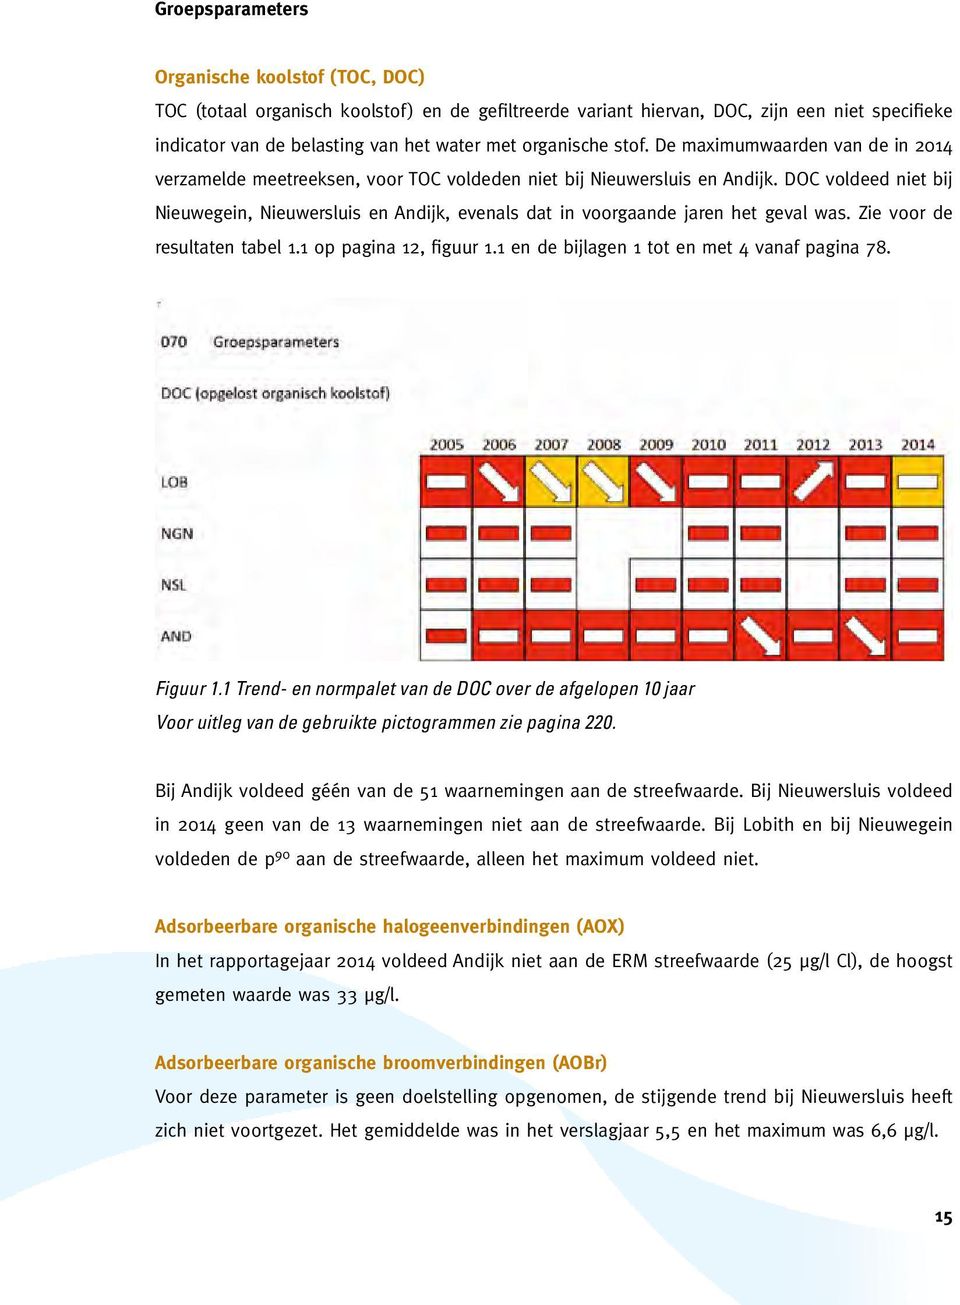 DOC voldeed niet bij Nieuwegein, Nieuwersluis en Andijk, evenals dat in voorgaande jaren het geval was. Zie voor de resultaten tabel 1.1 op pagina 12, figuur 1.